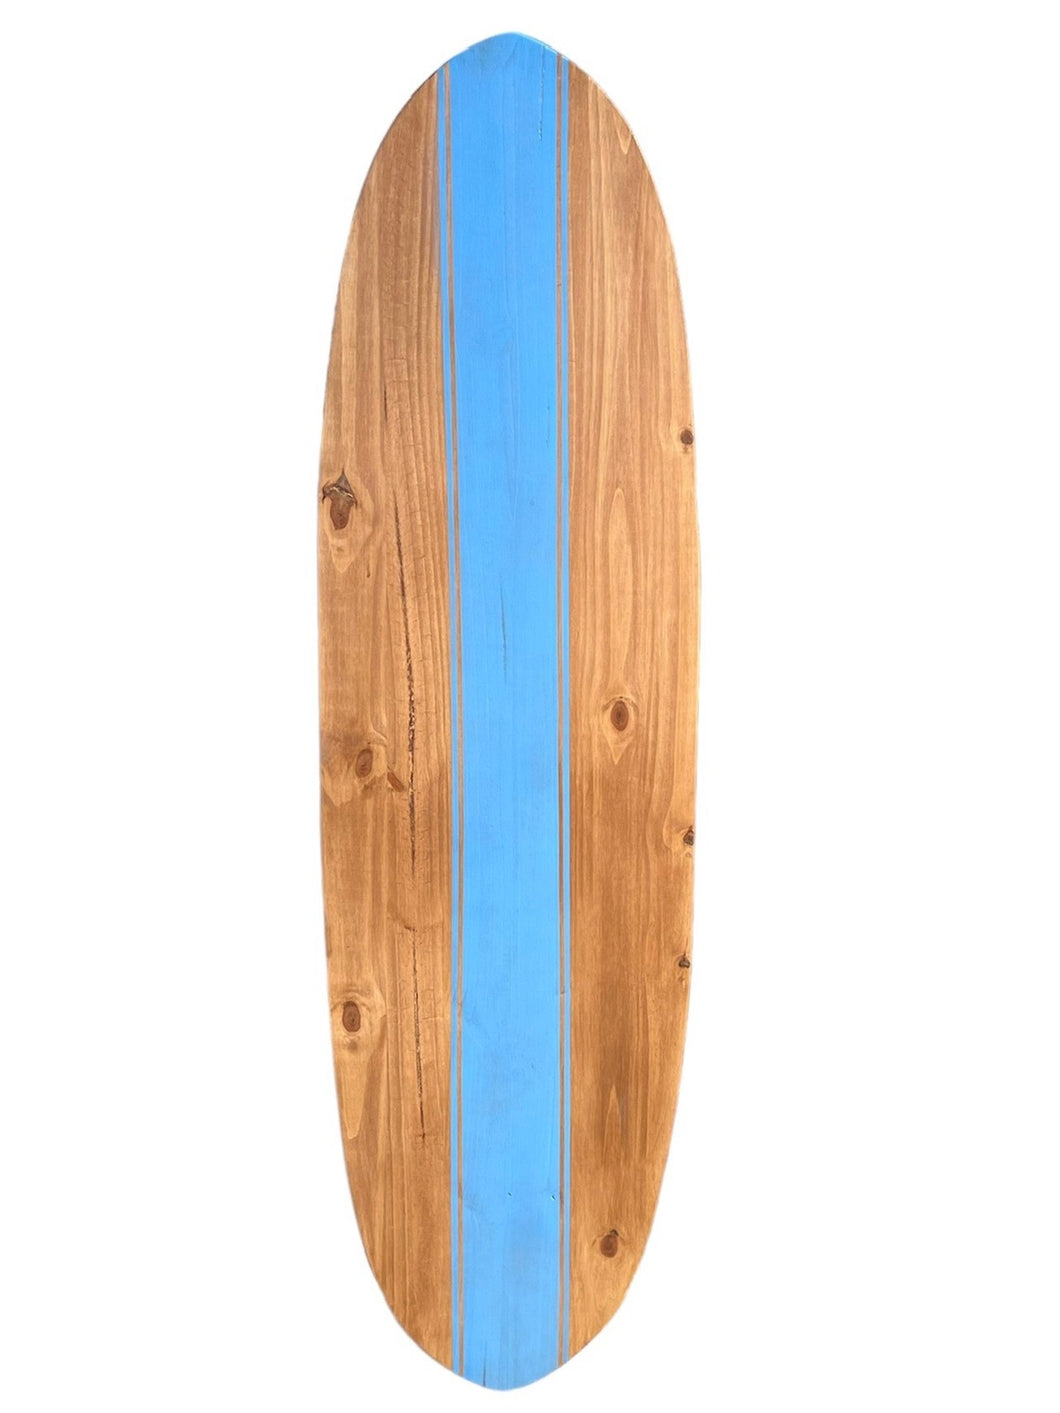 wood surfboard 6'0